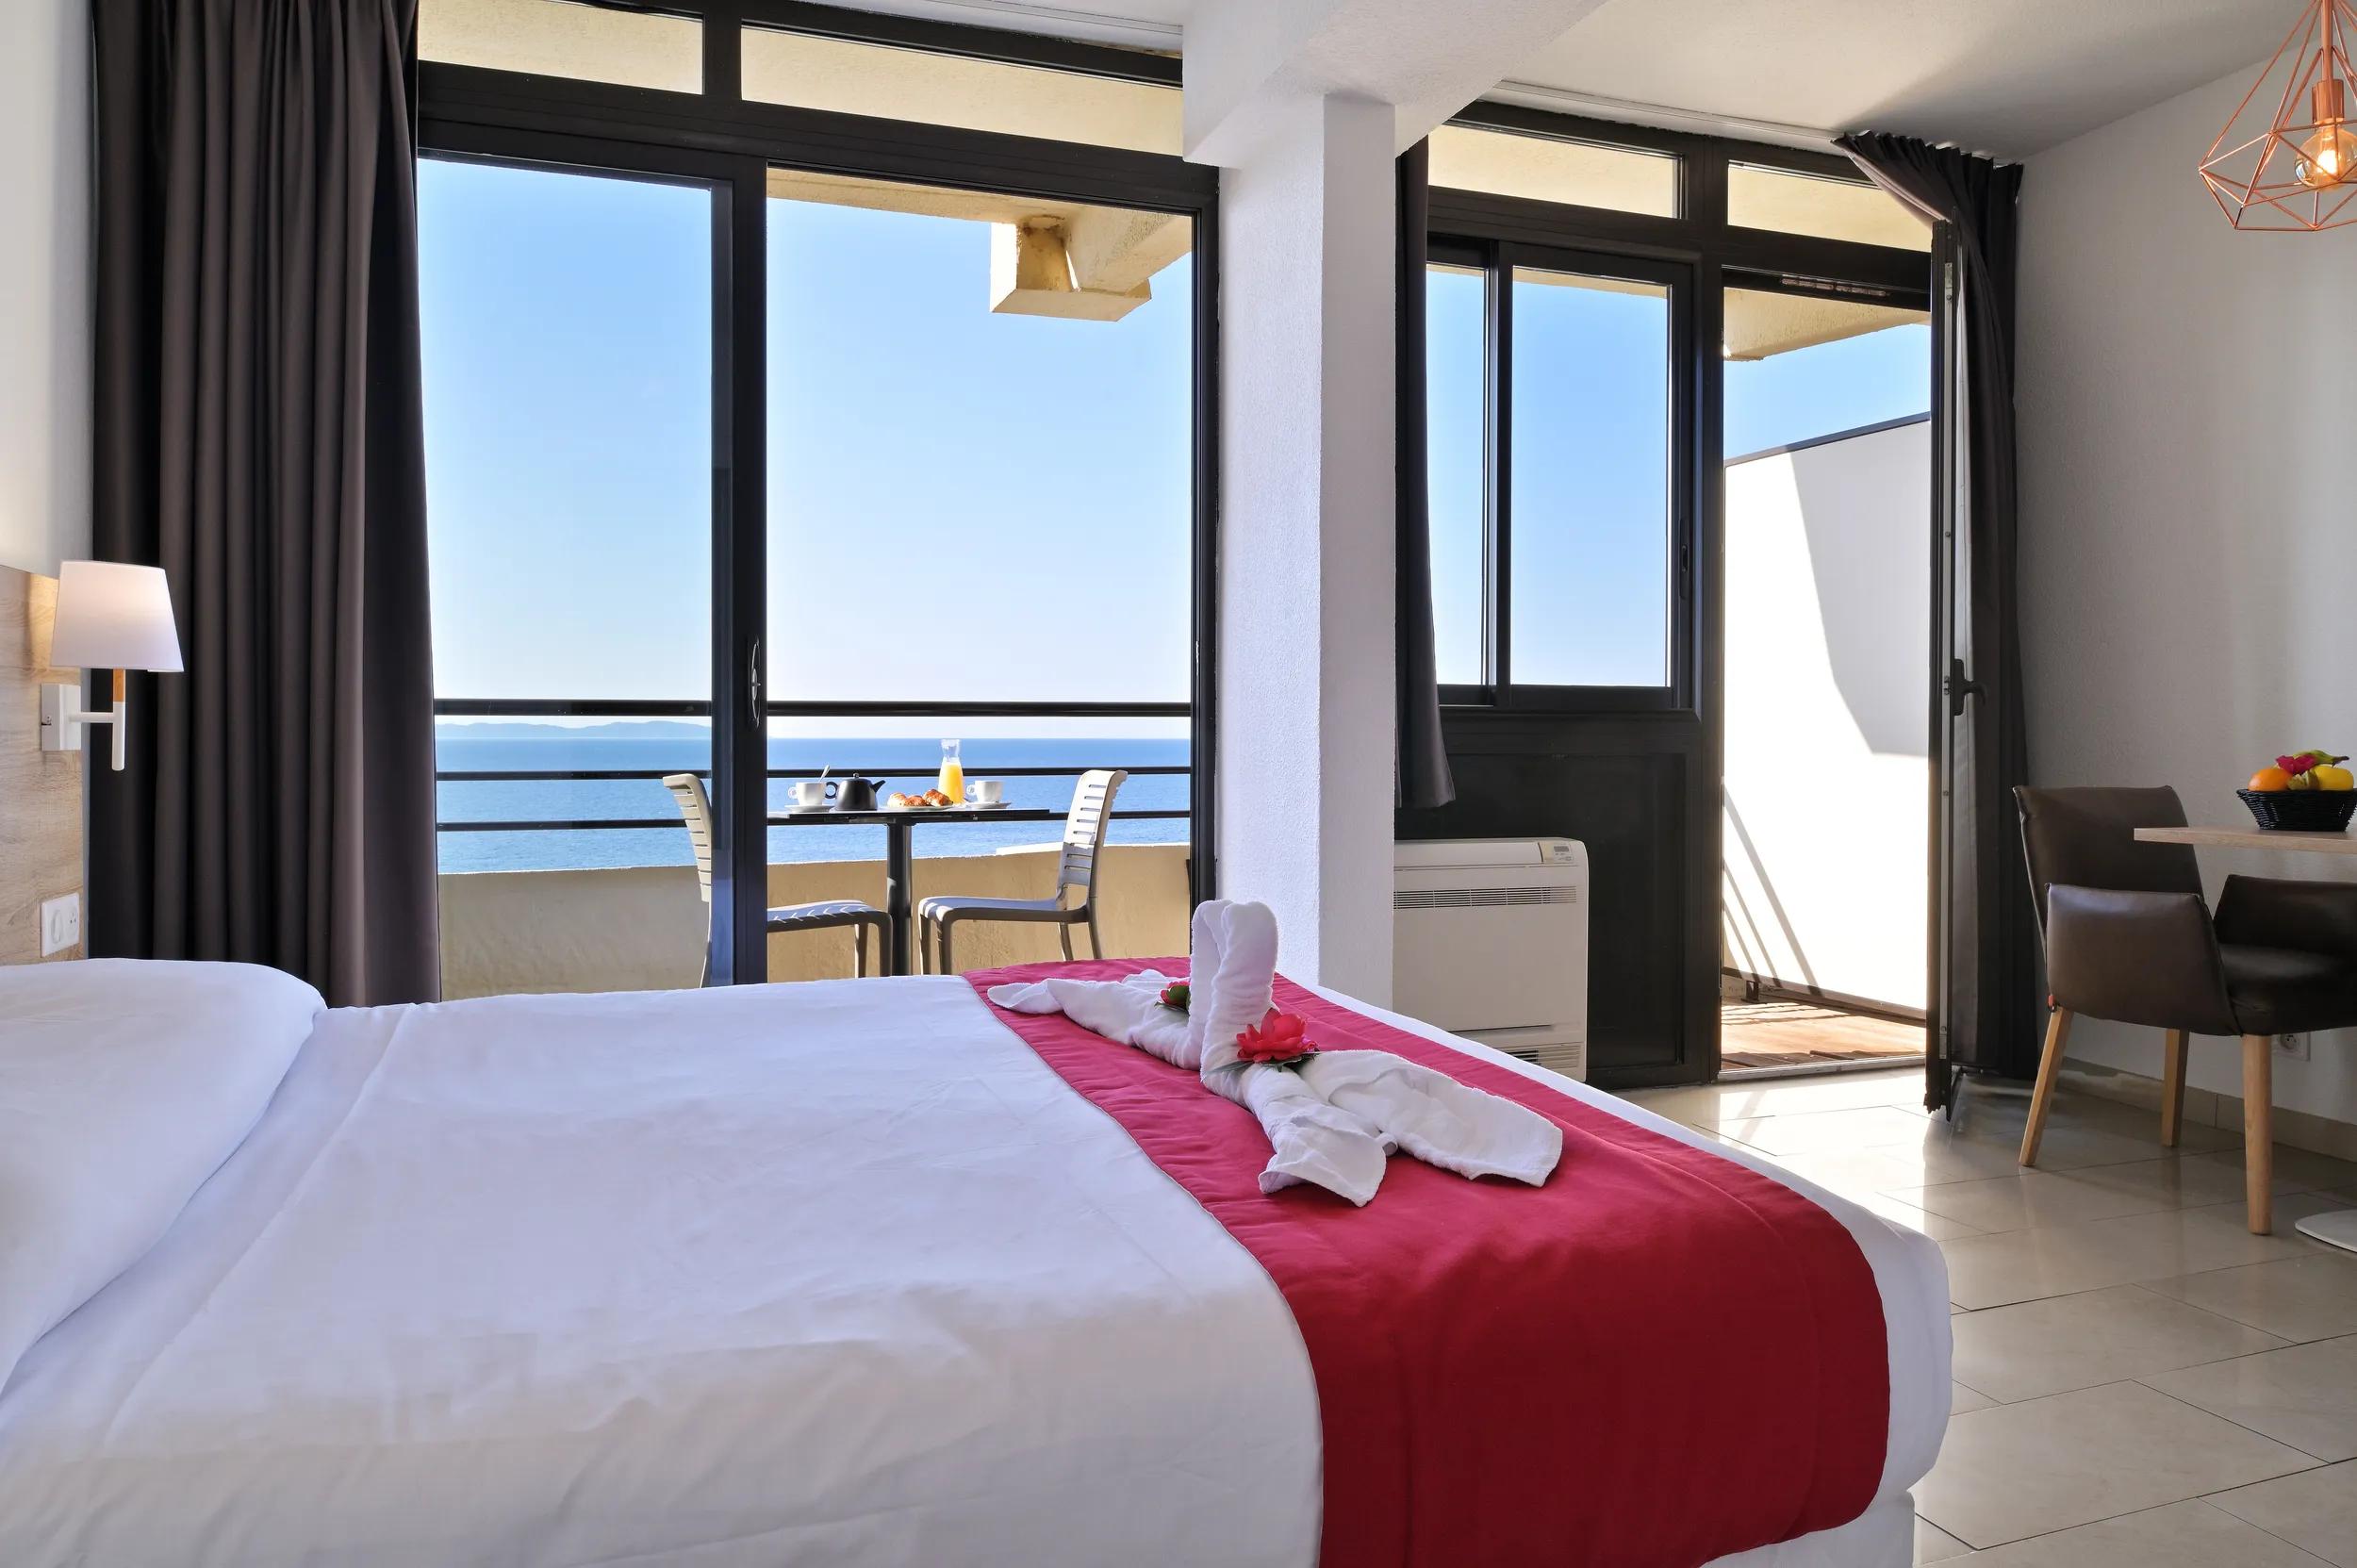 Des chambres confortables dans notre appart'hôtel 3 étoiles à Ajaccio